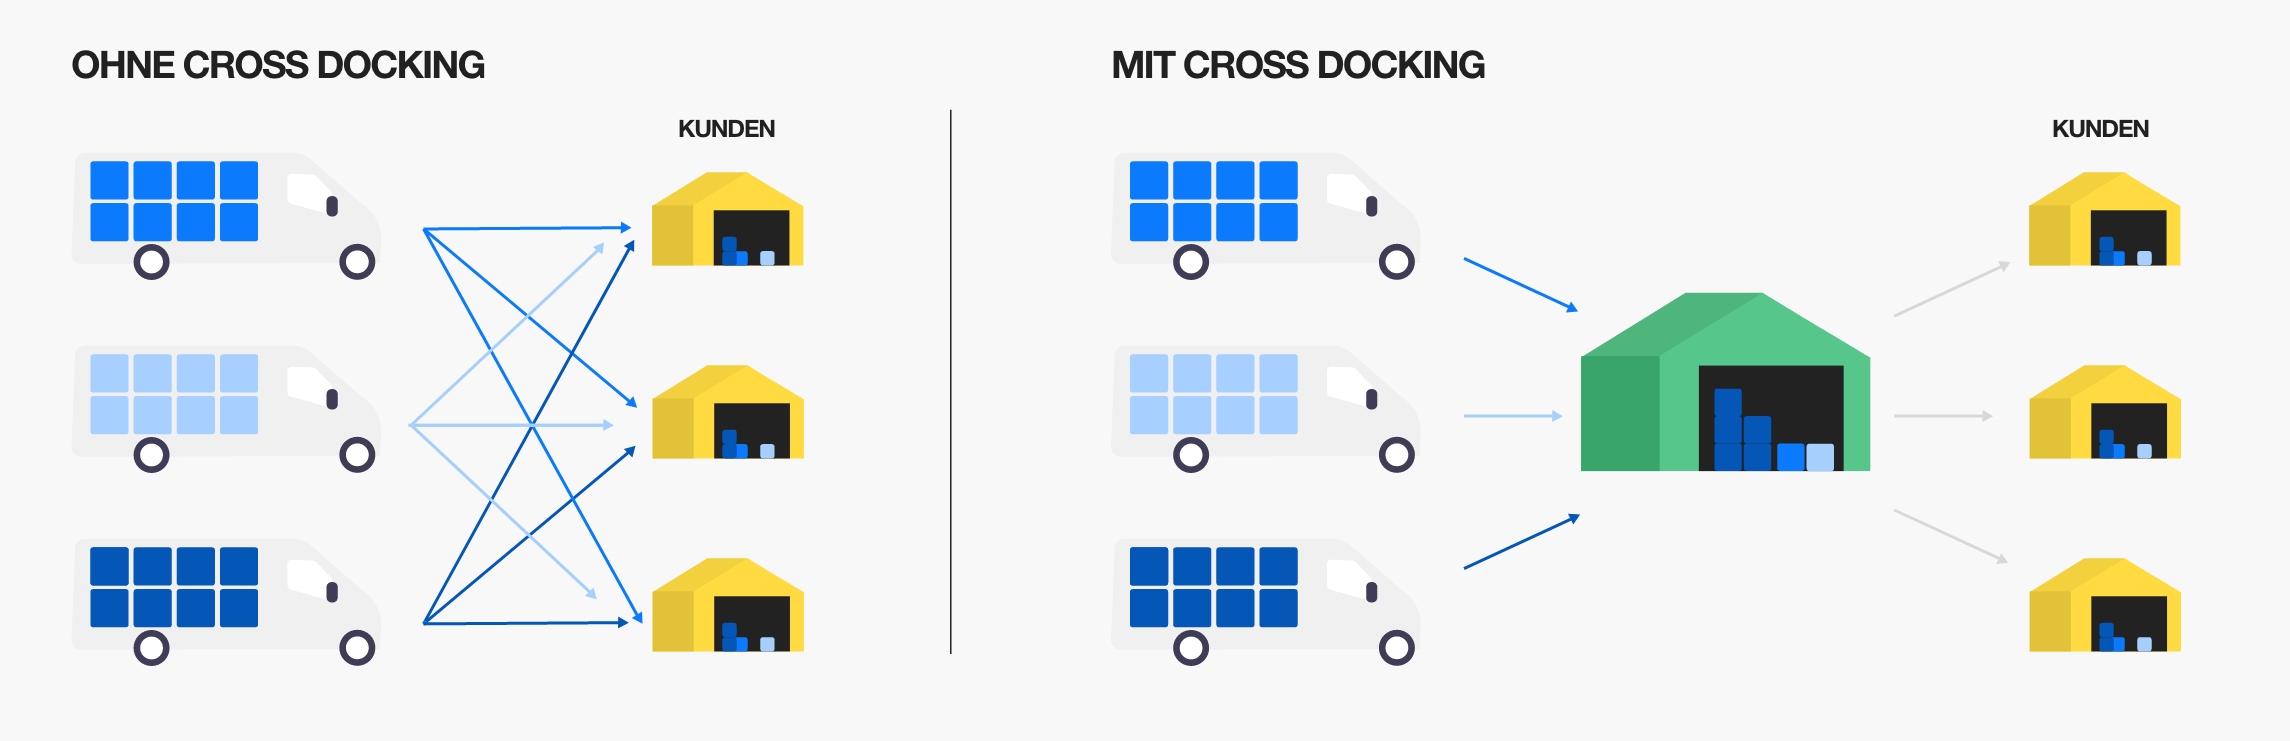 Schema für die Funktionsweise einer Cross-Docking-Plattform